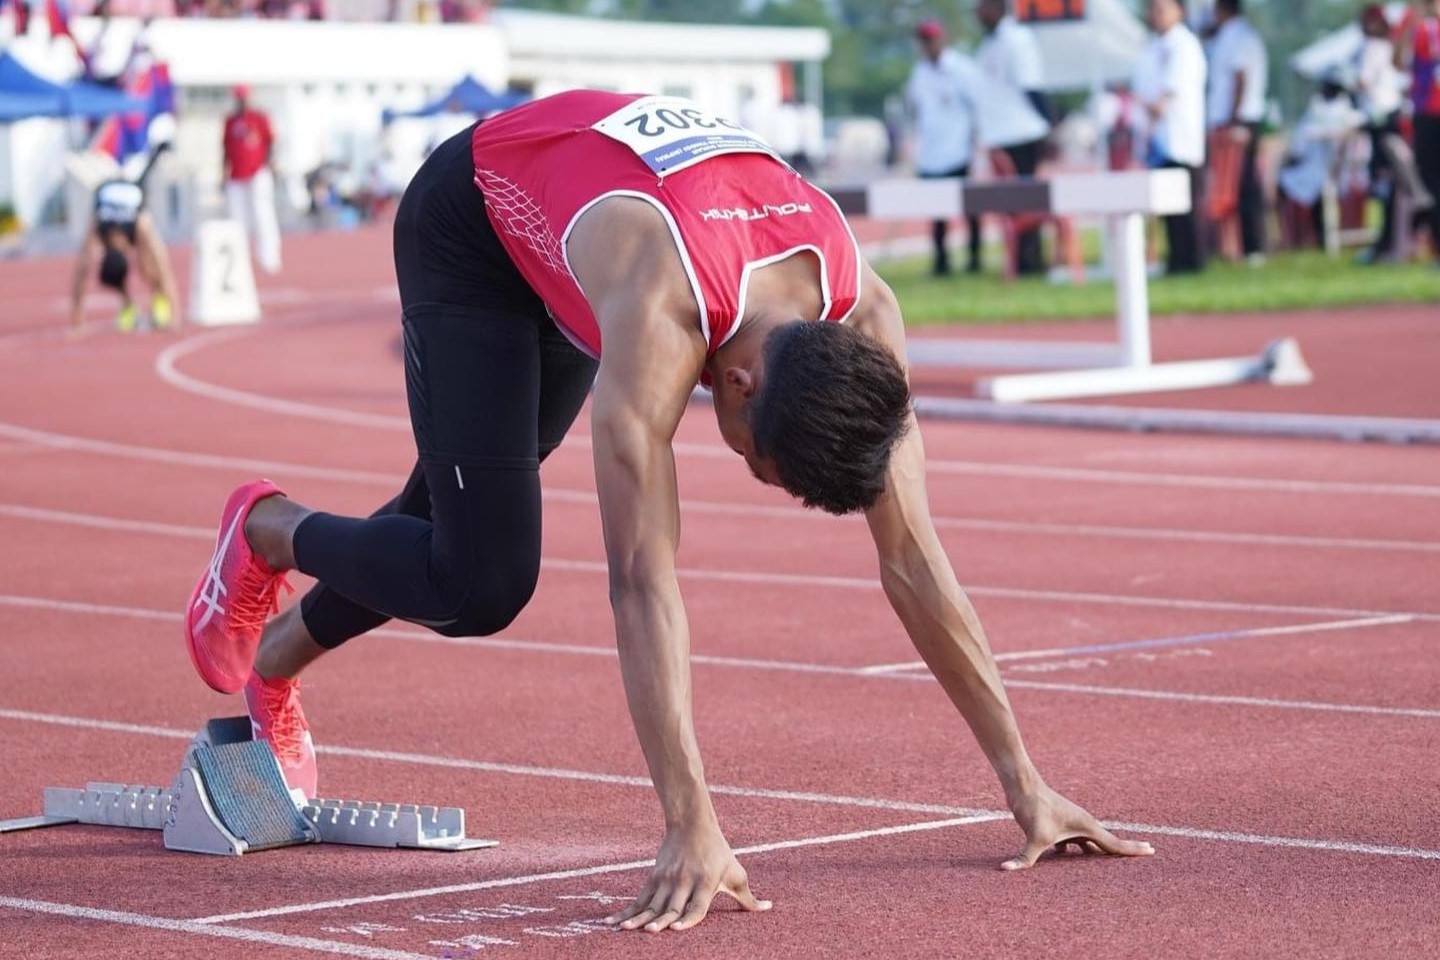 Asiad: Umar expresses frustration over slow start, missing 400m final